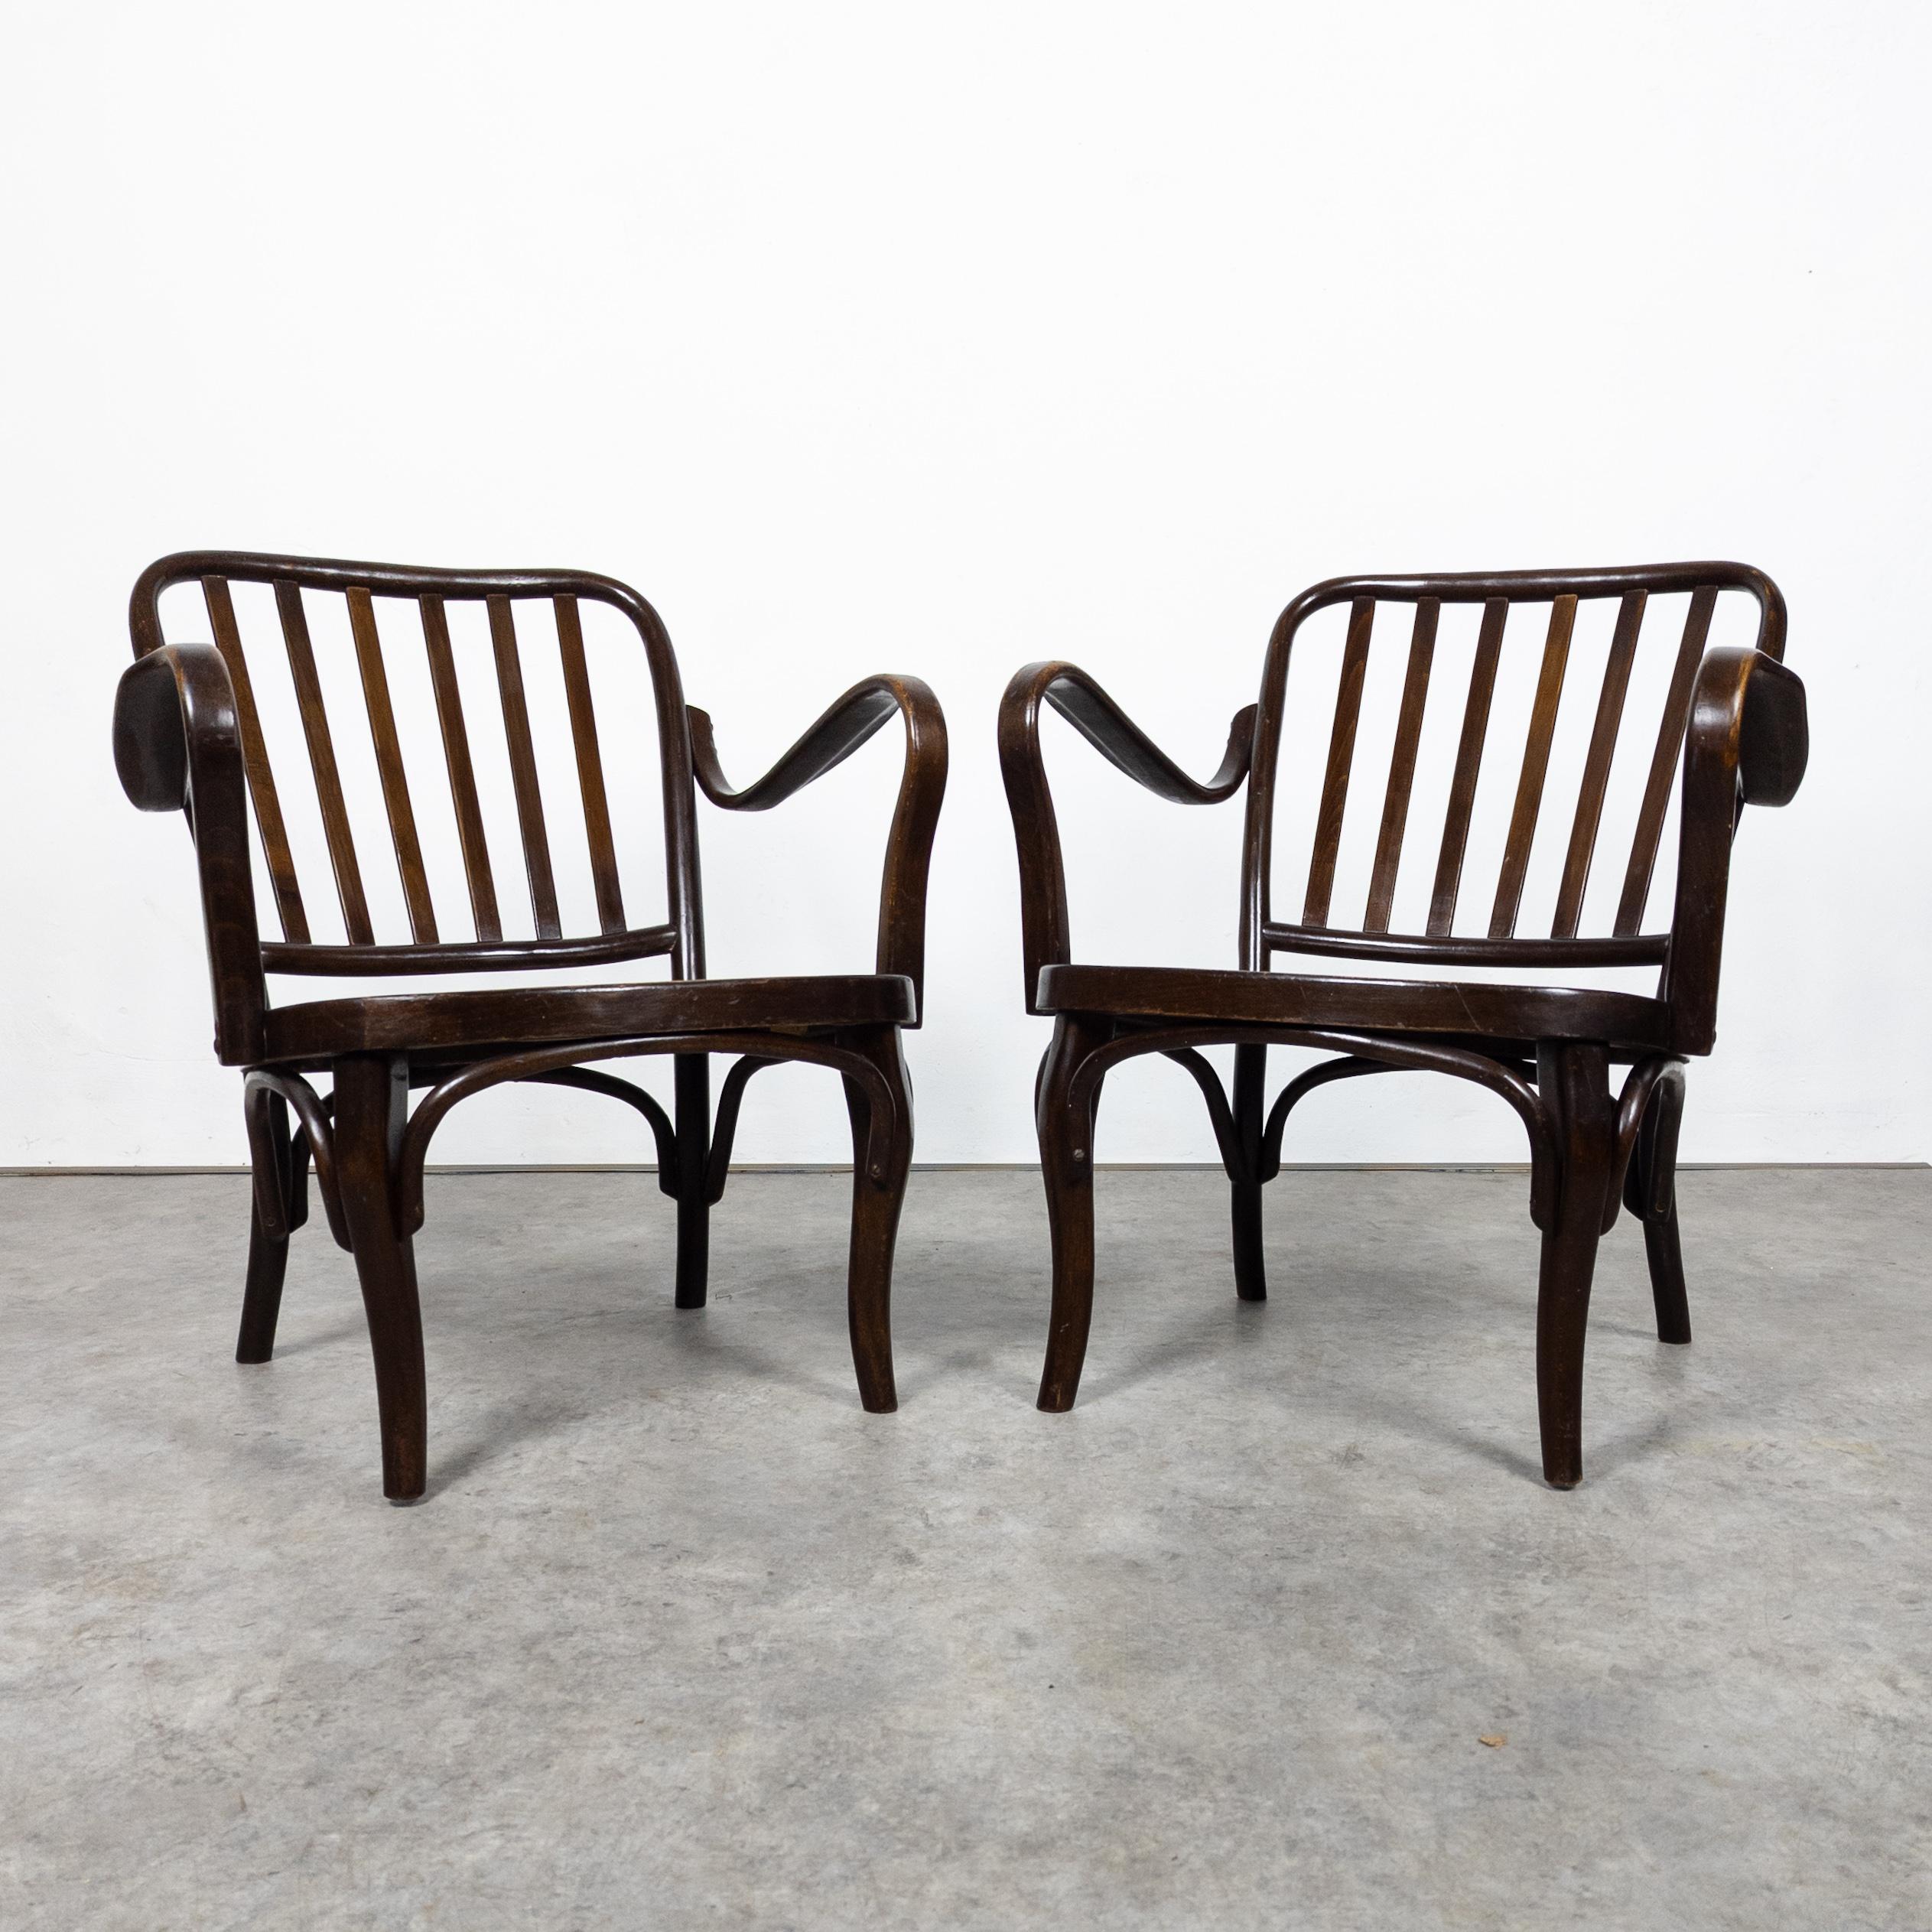 Le fauteuil Thonet A 752 est une pièce classique qui incarne l'élégance intemporelle. Conçus par Josef Frank, Vienne, vers 1930, fabriqués par la célèbre société Thonet, ces fauteuils illustrent la technique emblématique du bois courbé, avec des